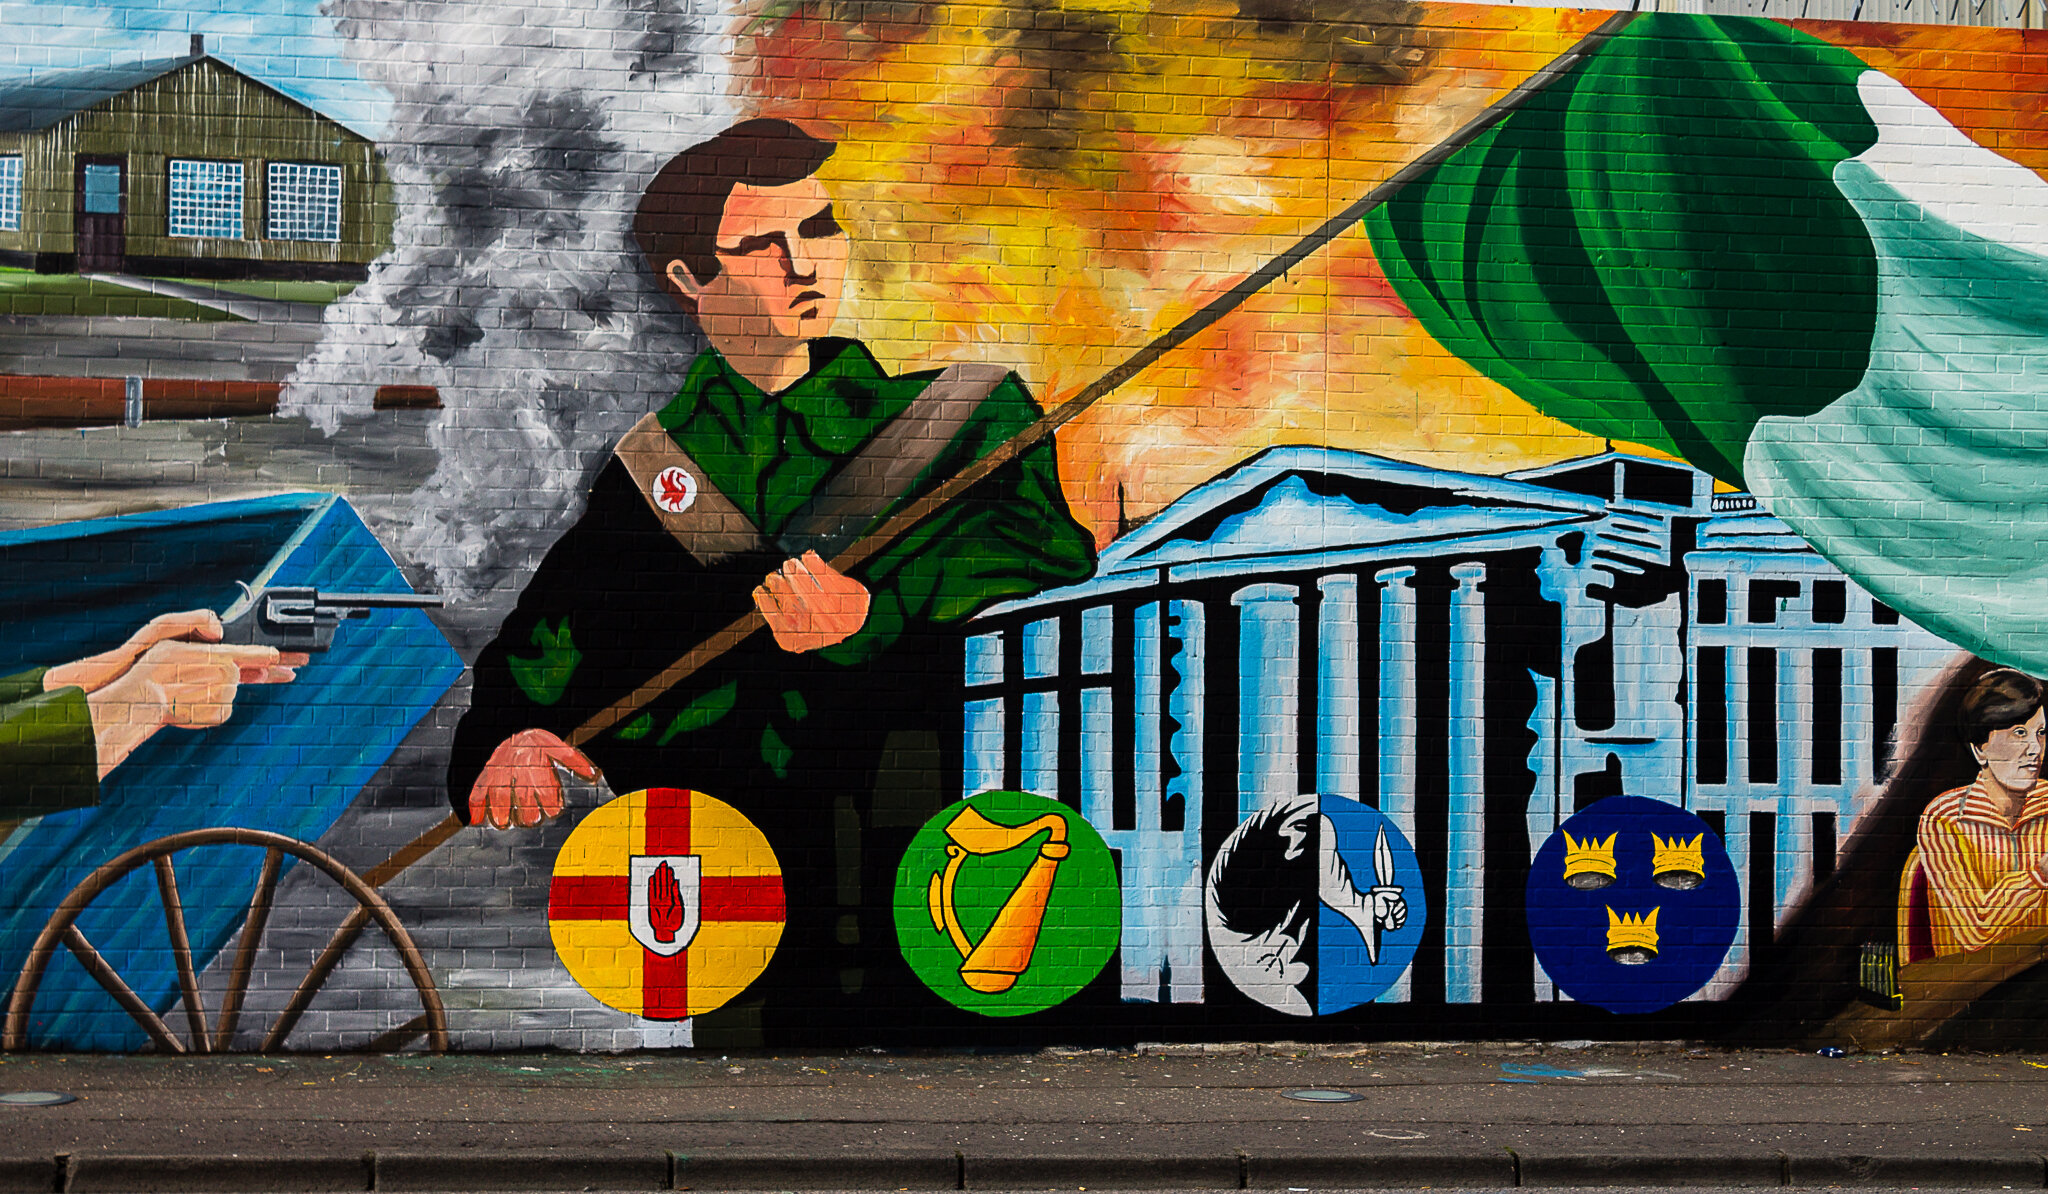 Leg 3 - The Murals In Belfast